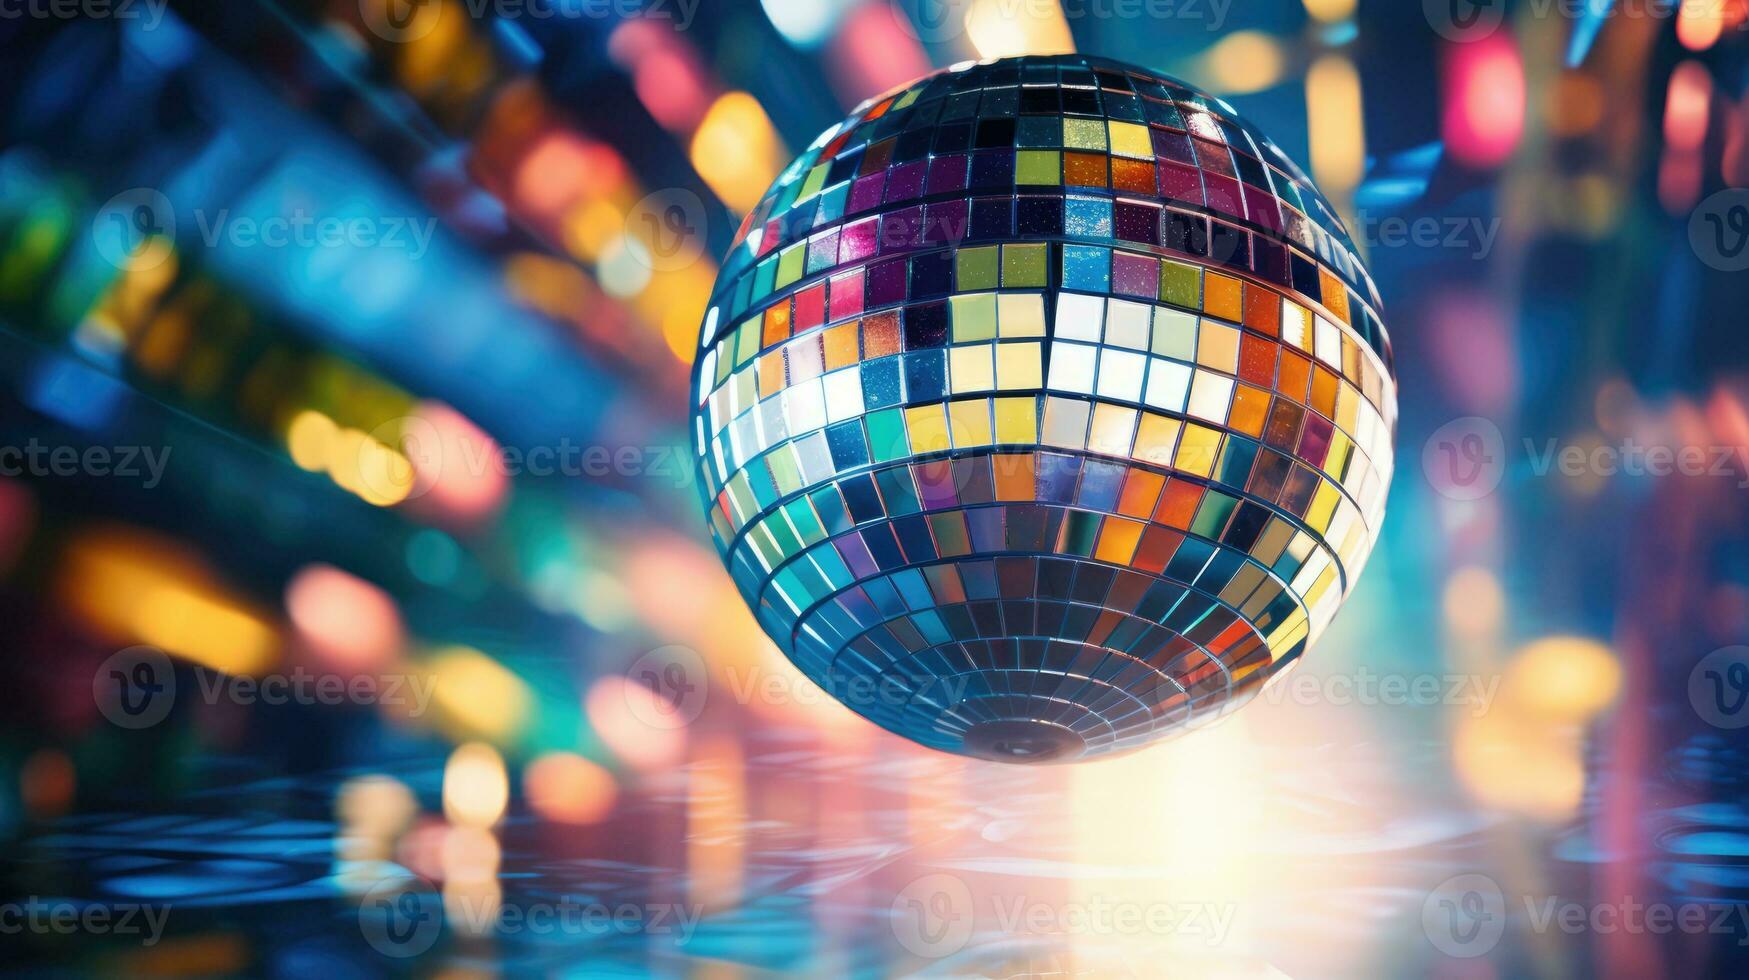 färgrik disko spegel boll lampor natt klubb bakgrund. fest lampor disko boll foto